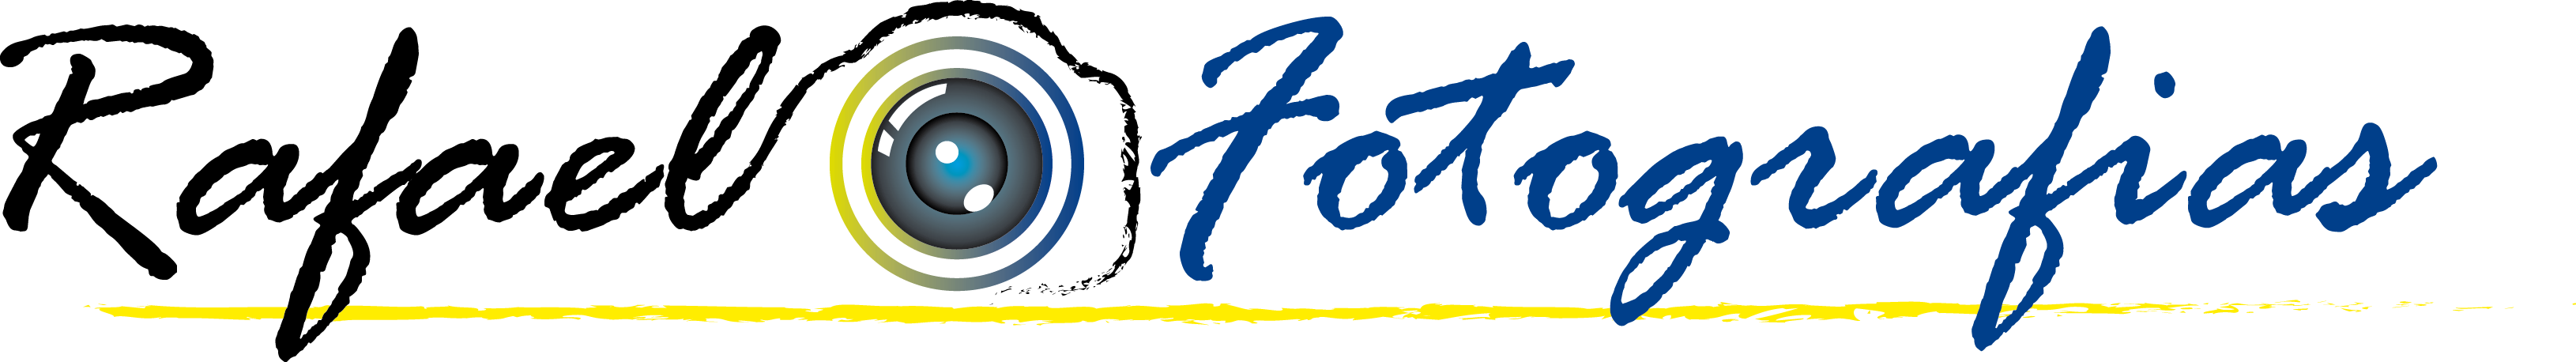 Rafael Fotografias logo